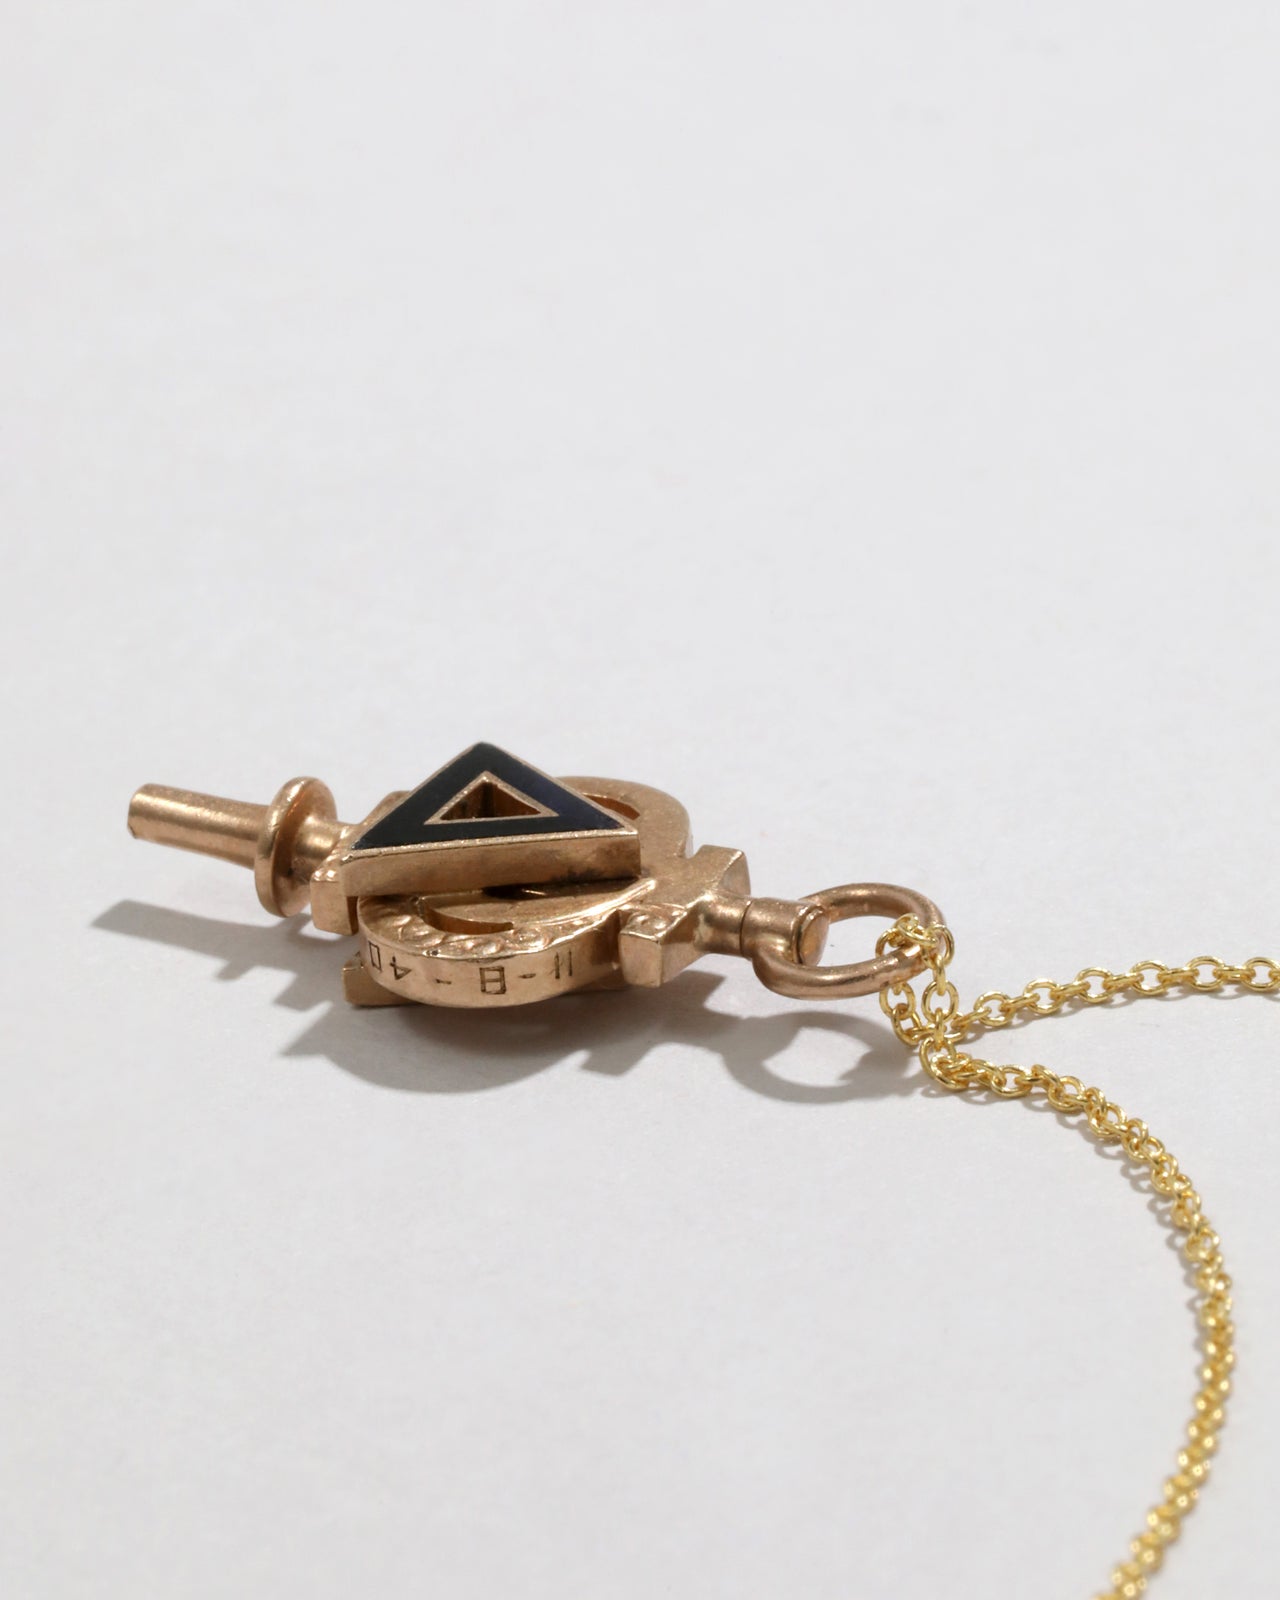 Antique 1800s 10k Gold Enamel Pendant Necklace - Photo 2